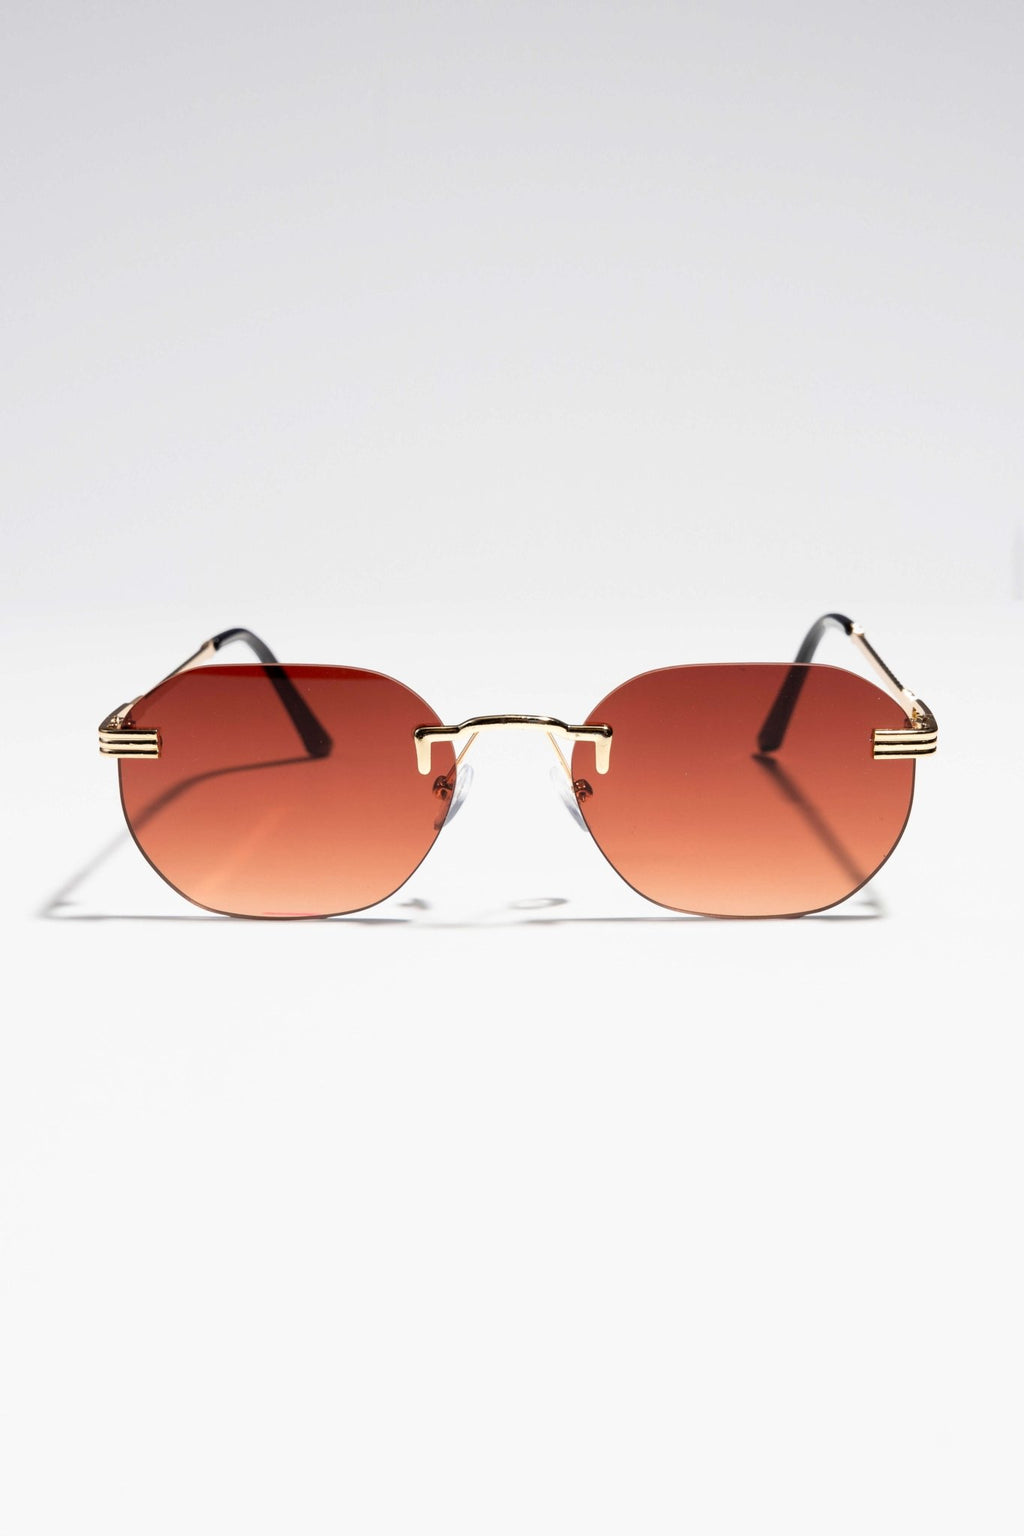 Rio Sunglasses - Gold/Brown